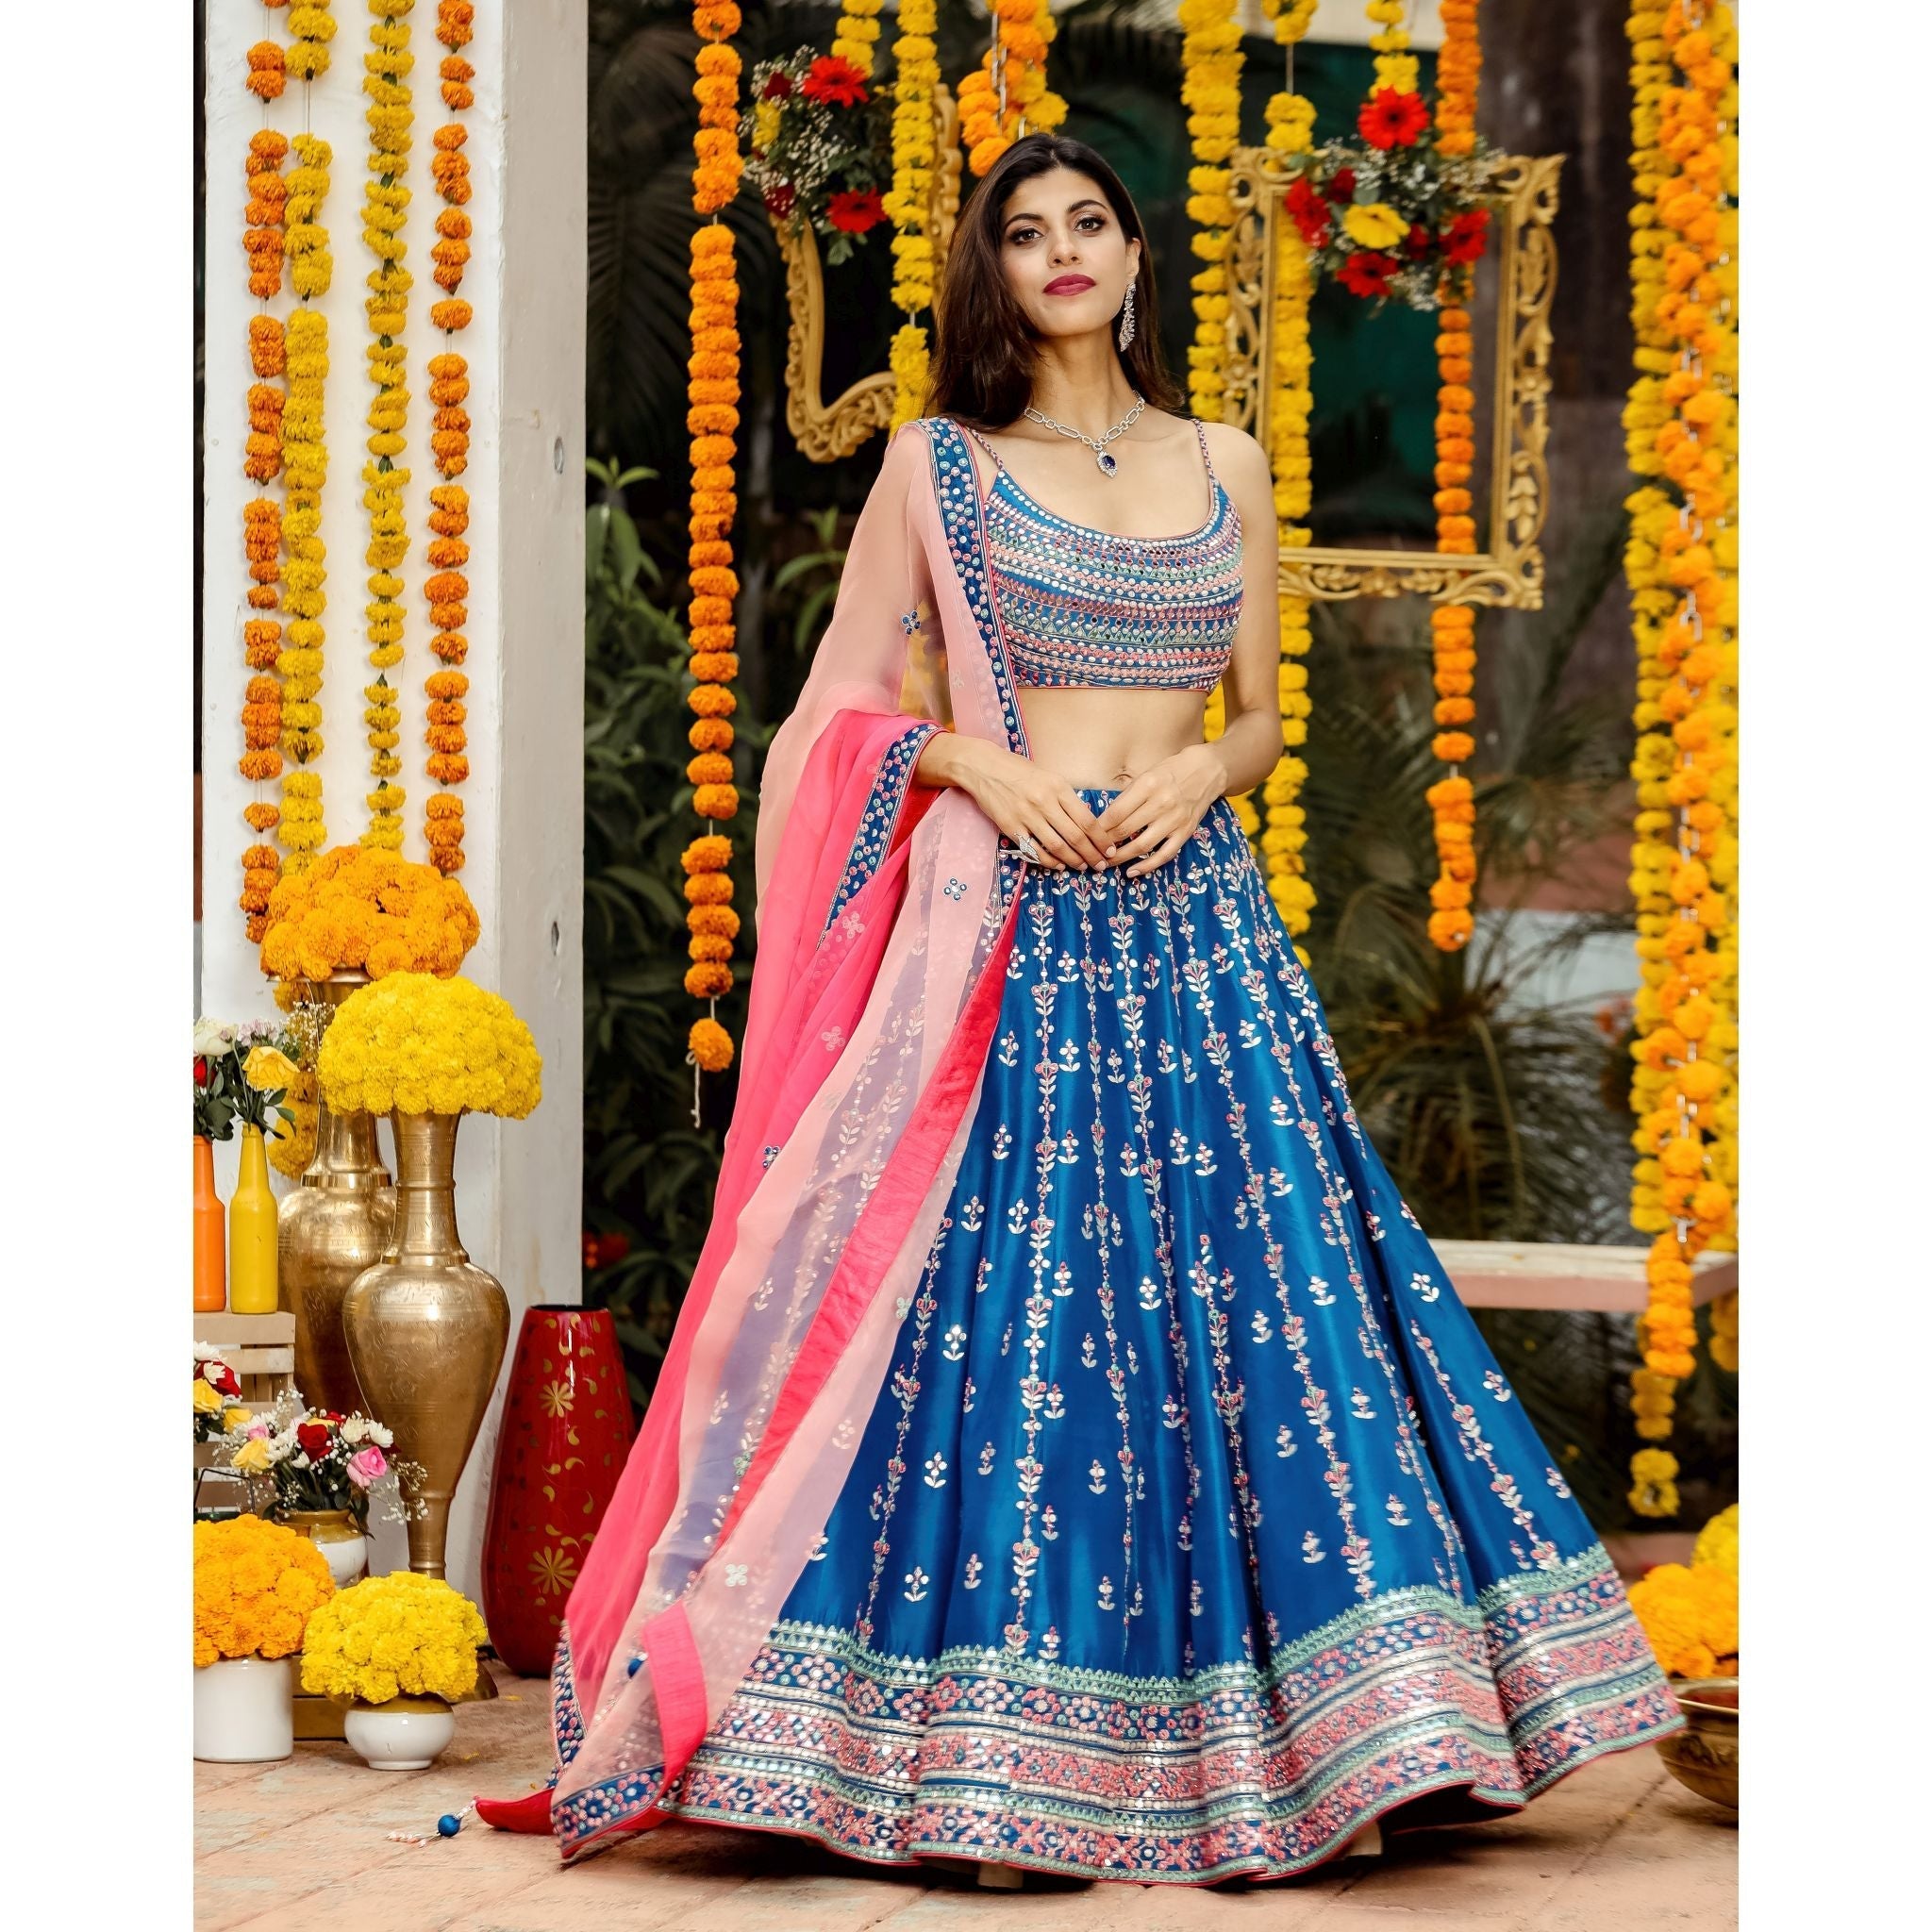 Teal Blue Mirrorwork Lehenga Set - Indian Designer Bridal Wedding Outfit